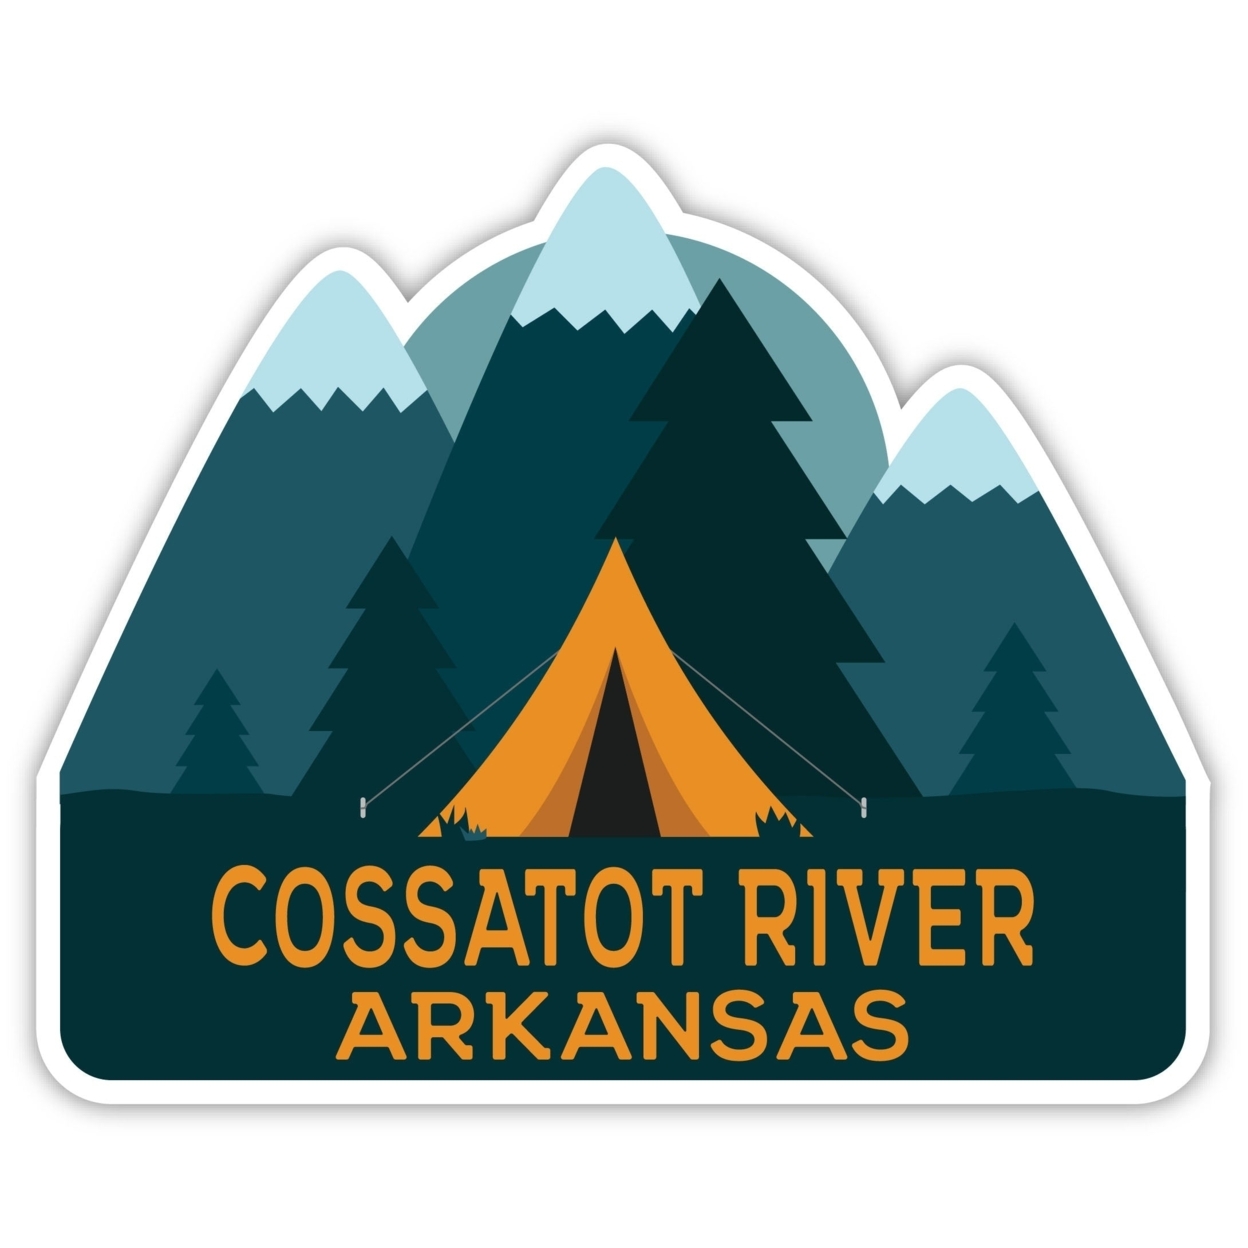 Cossatot River Arkansas Souvenir Decorative Stickers (Choose Theme And Size) - Single Unit, 2-Inch, Tent